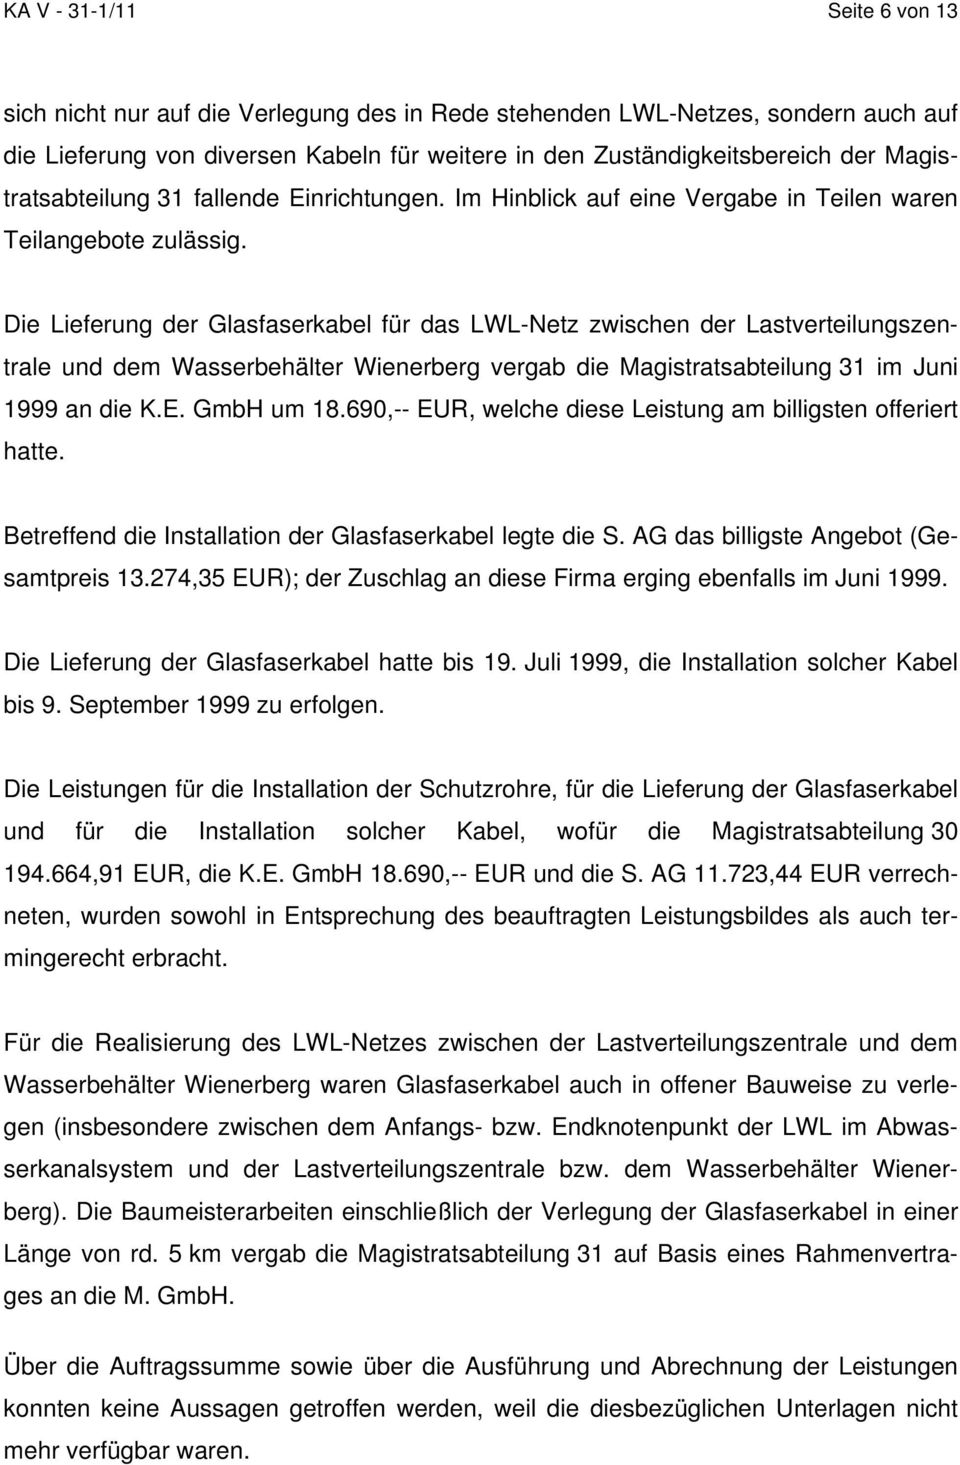 Die Lieferung der Glasfaserkabel für das LWL-Netz zwischen der Lastverteilungszentrale und dem Wasserbehälter Wienerberg vergab die Magistratsabteilung 31 im Juni 1999 an die K.E. GmbH um 18.